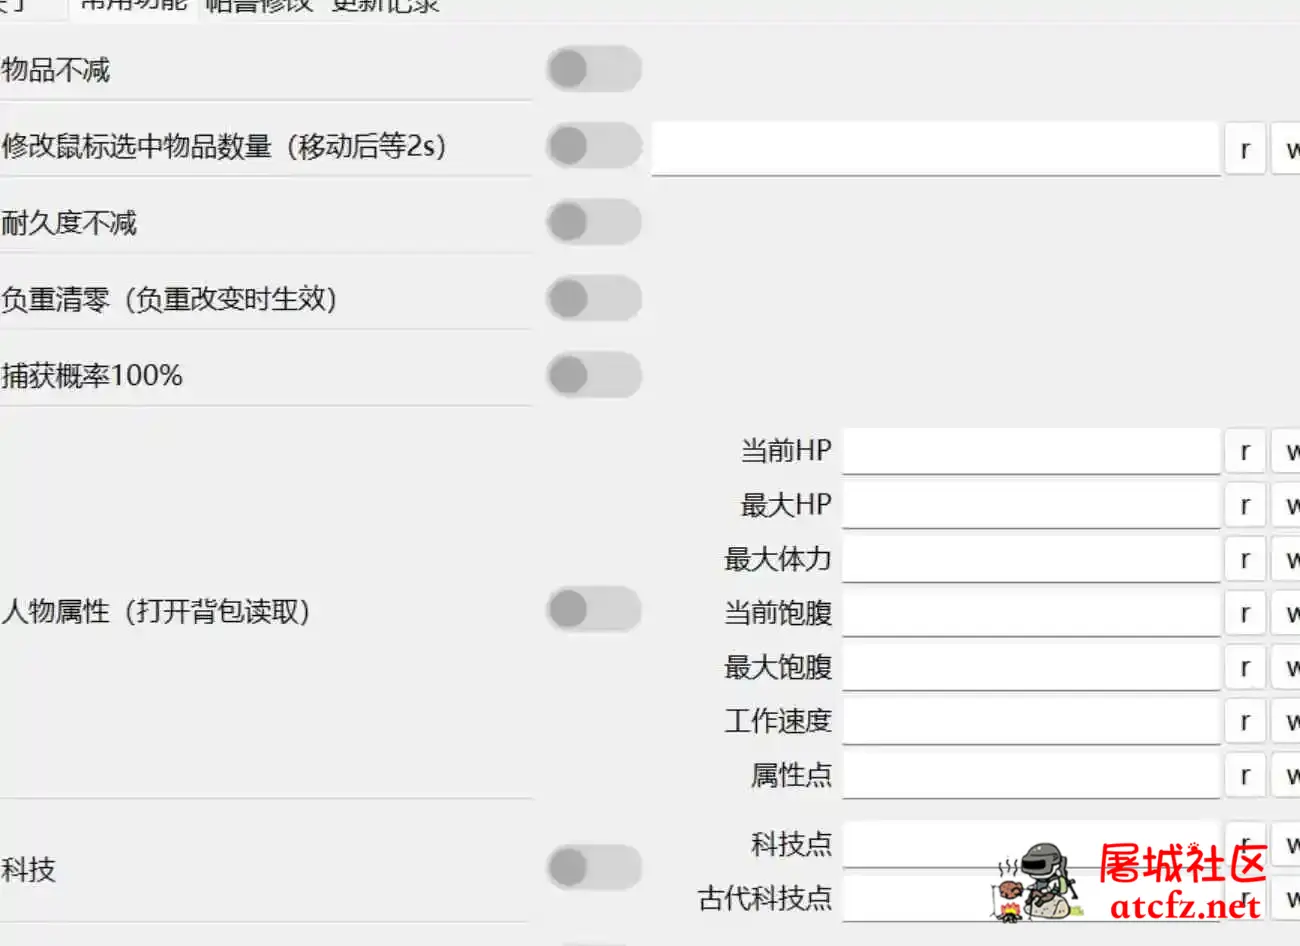 网友自制幻兽帕鲁修改器0.2.2.1中文版 屠城辅助网www.tcfz1.com5325